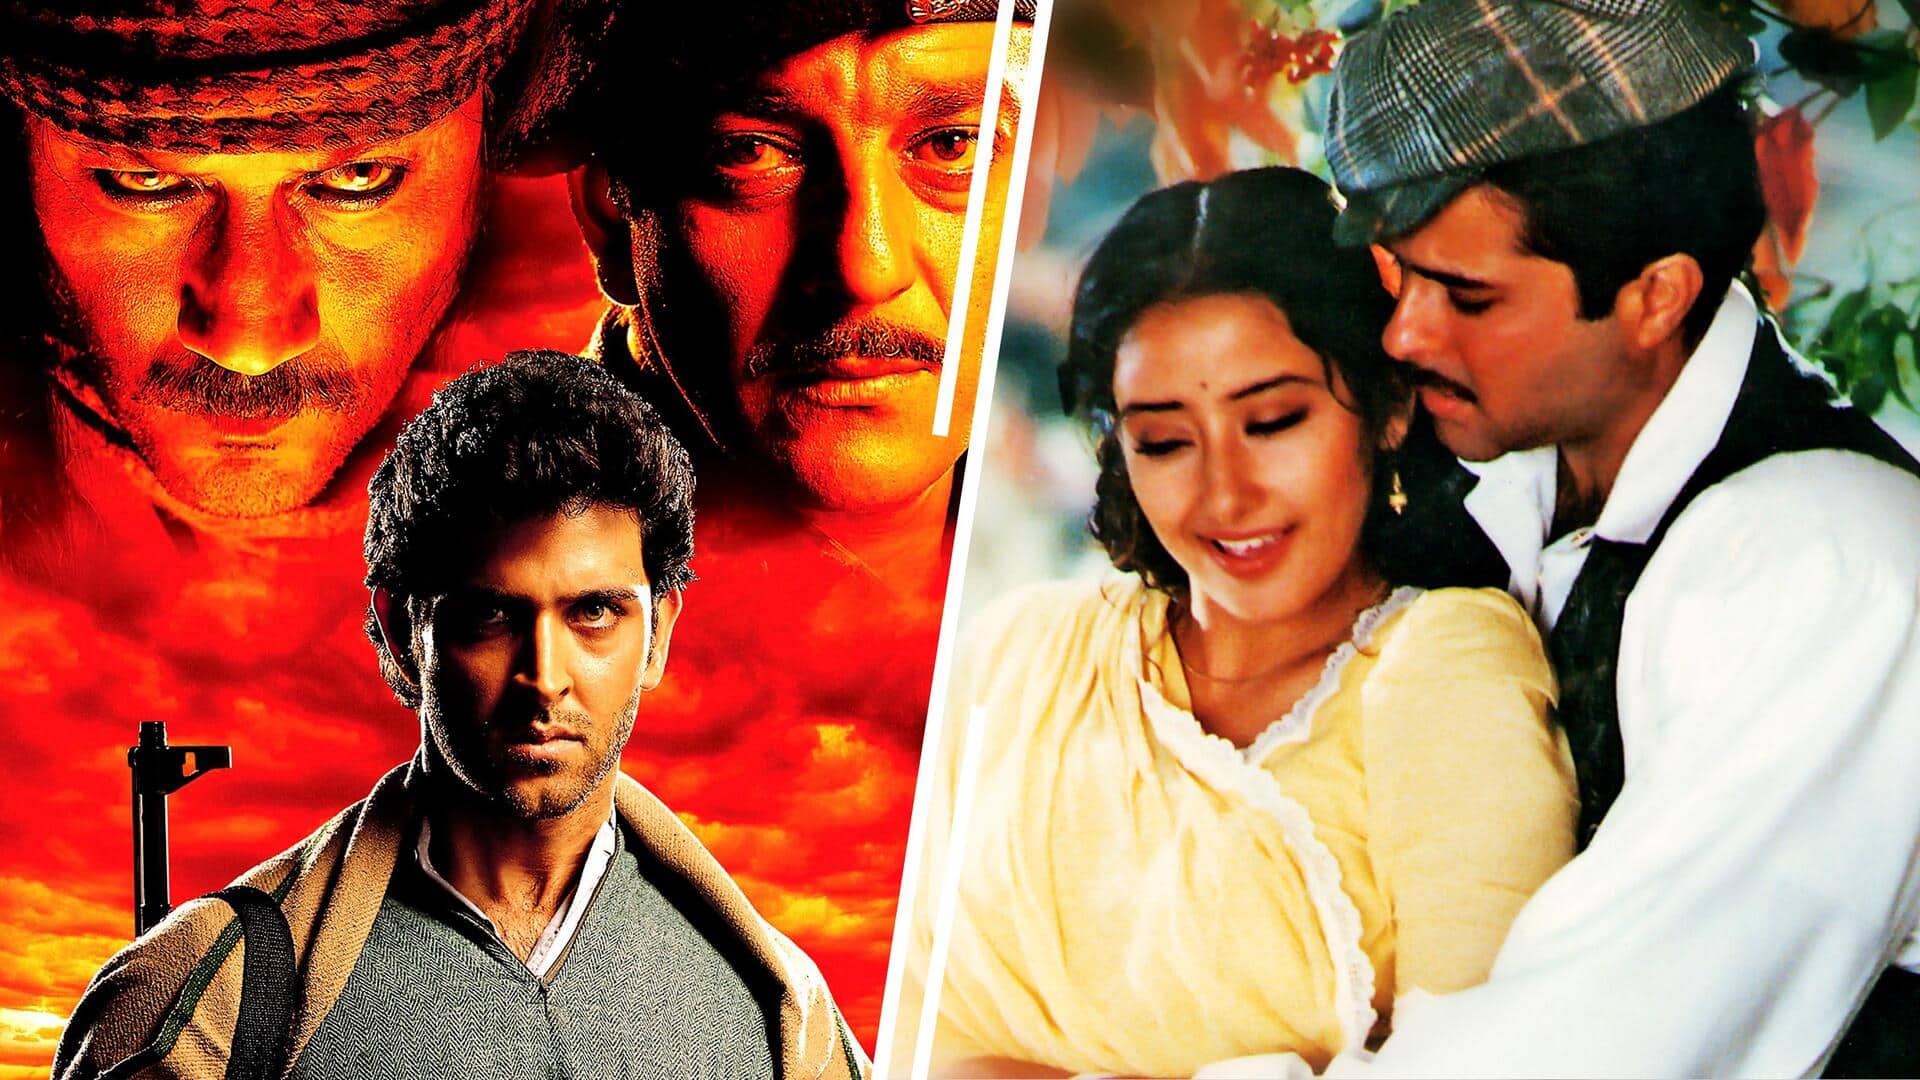 'मिशन कश्मीर' समेत इन यादगार फिल्मों का निर्देशन कर चुके हैं विधु विनोद चोपड़ा